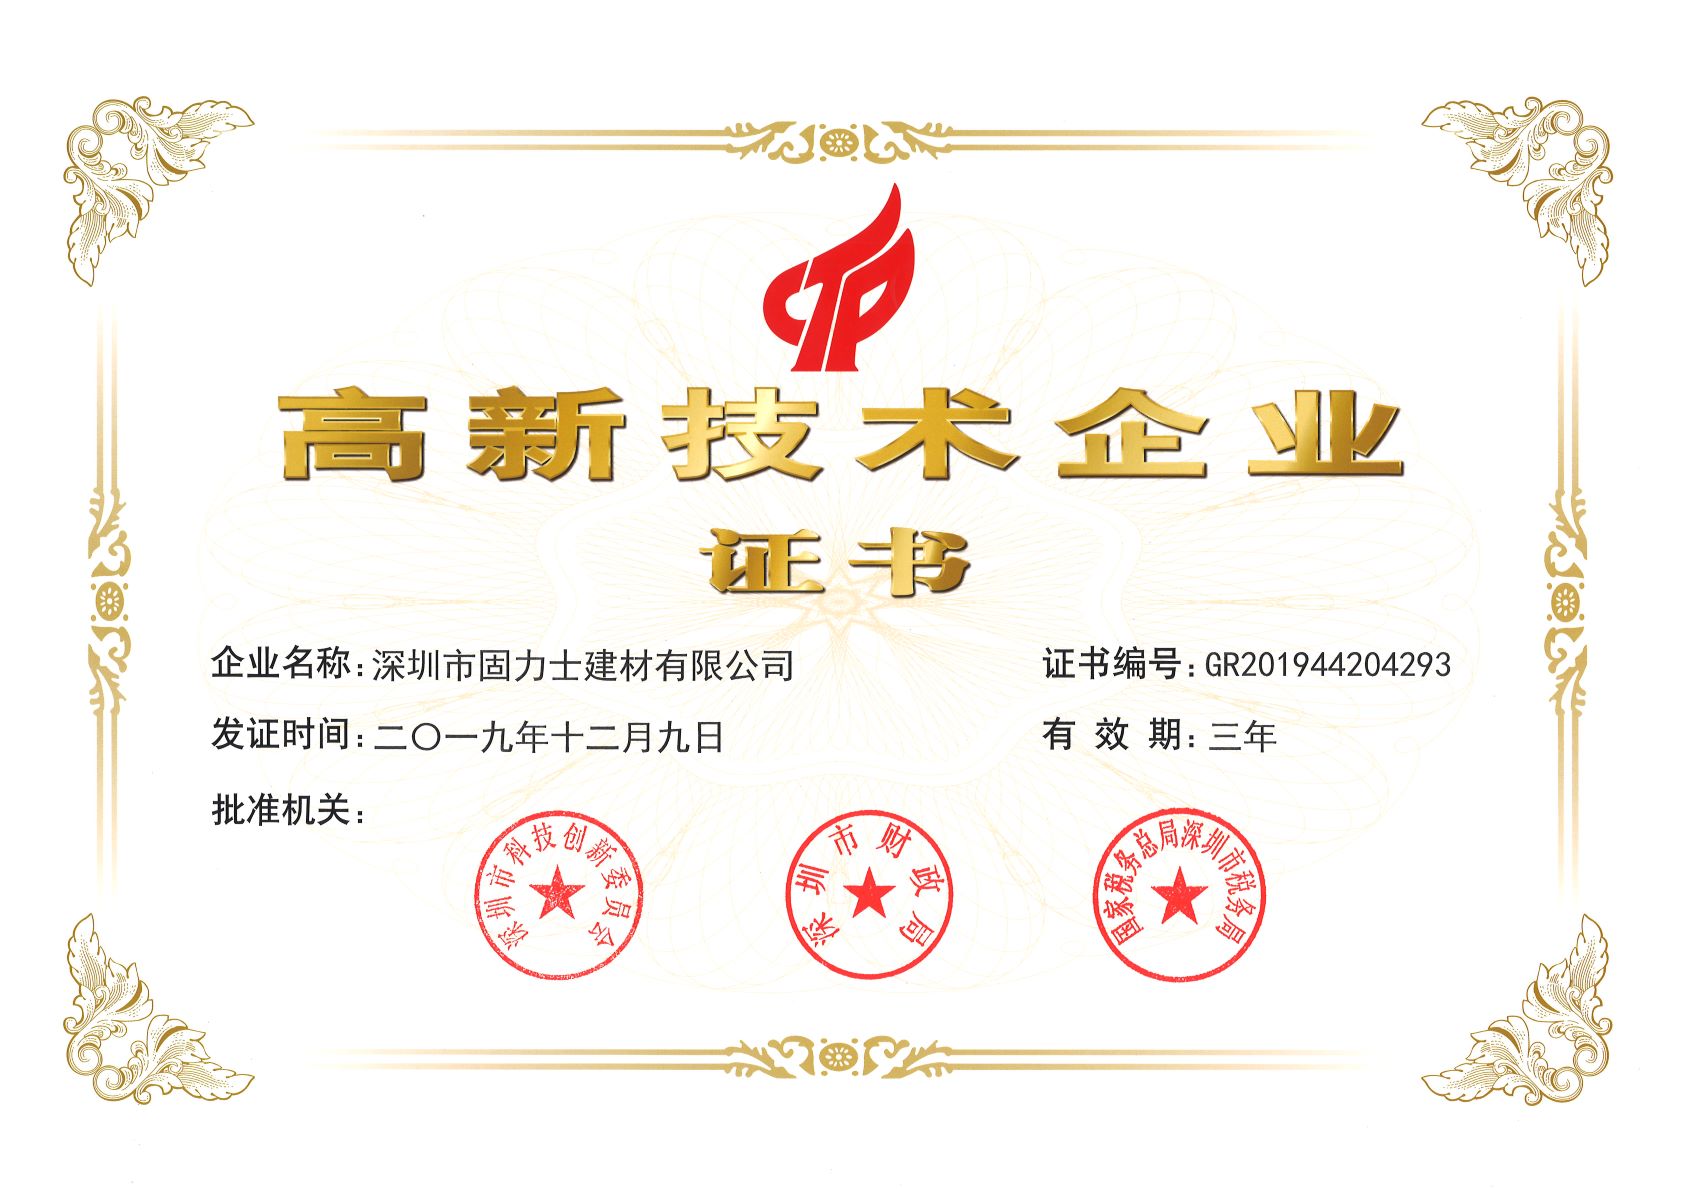 革吉热烈祝贺深圳市固力士建材有限公司通过高新技术企业认证